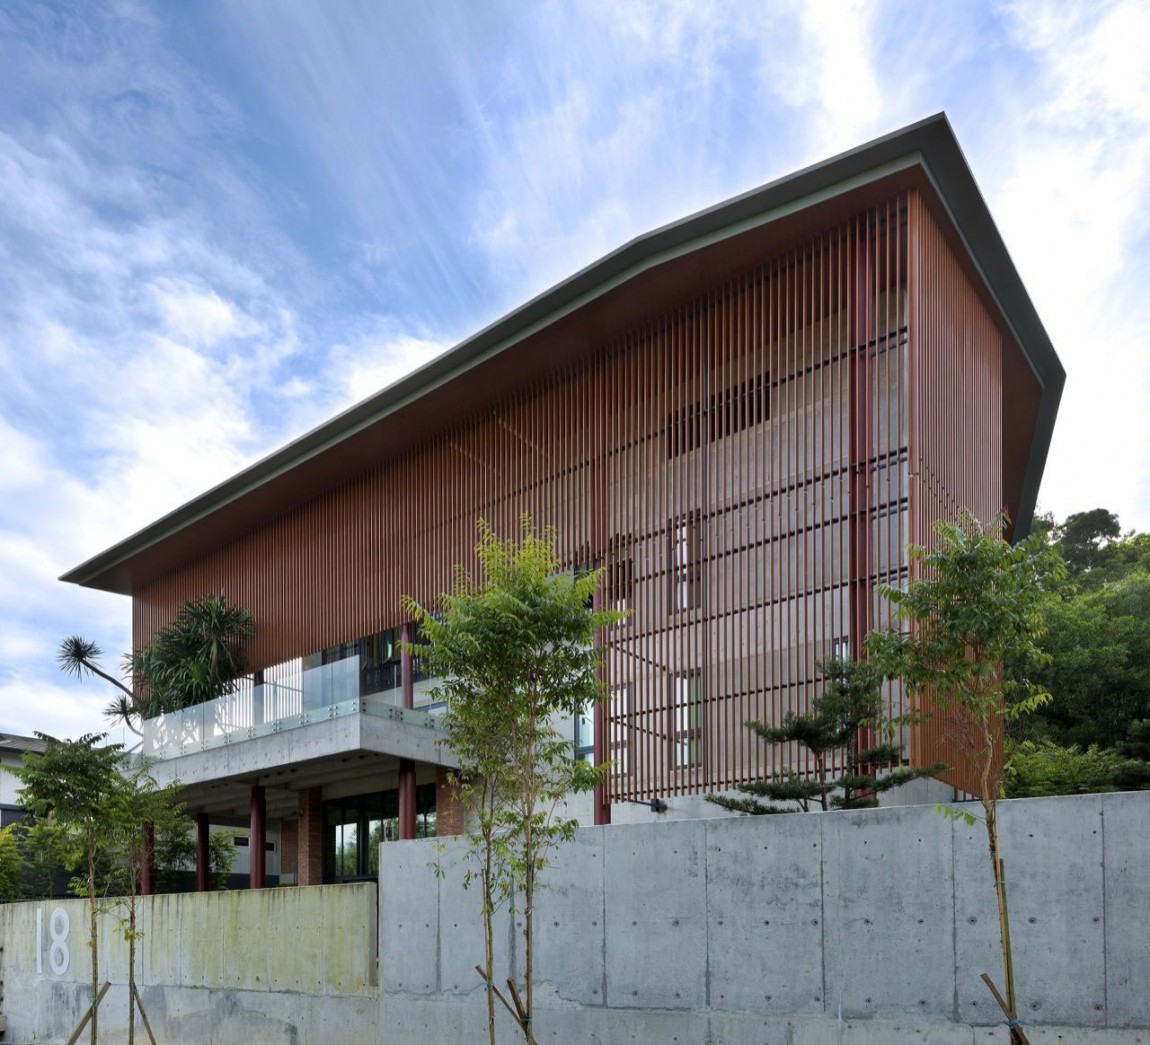 马来西亚绿色庭院式住宅——DRTAN LM Architect